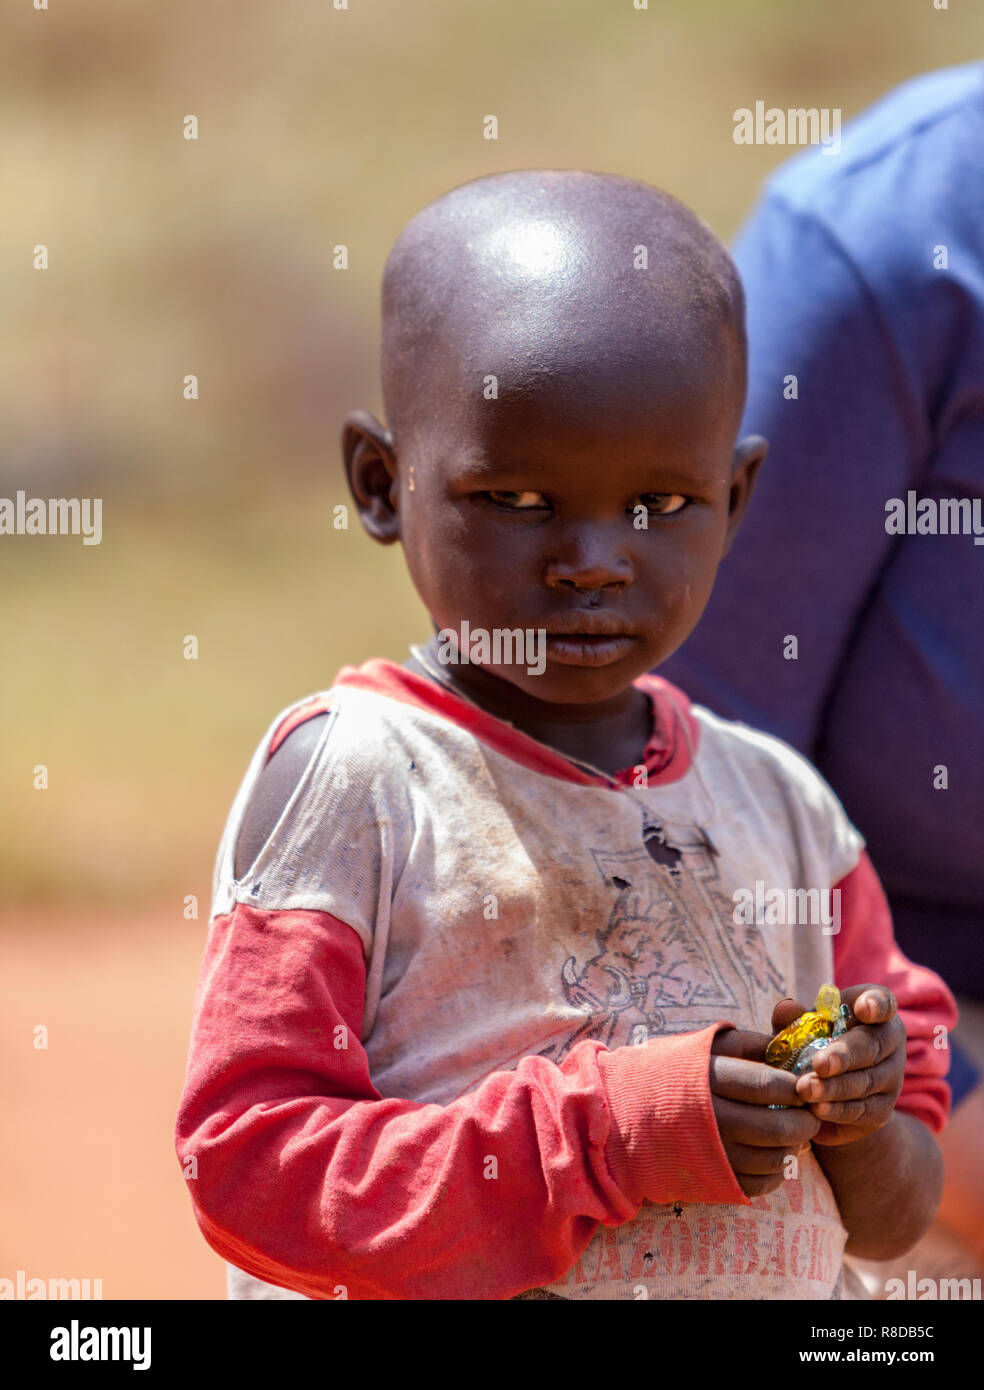 Little boy, Uganda Stock Photo